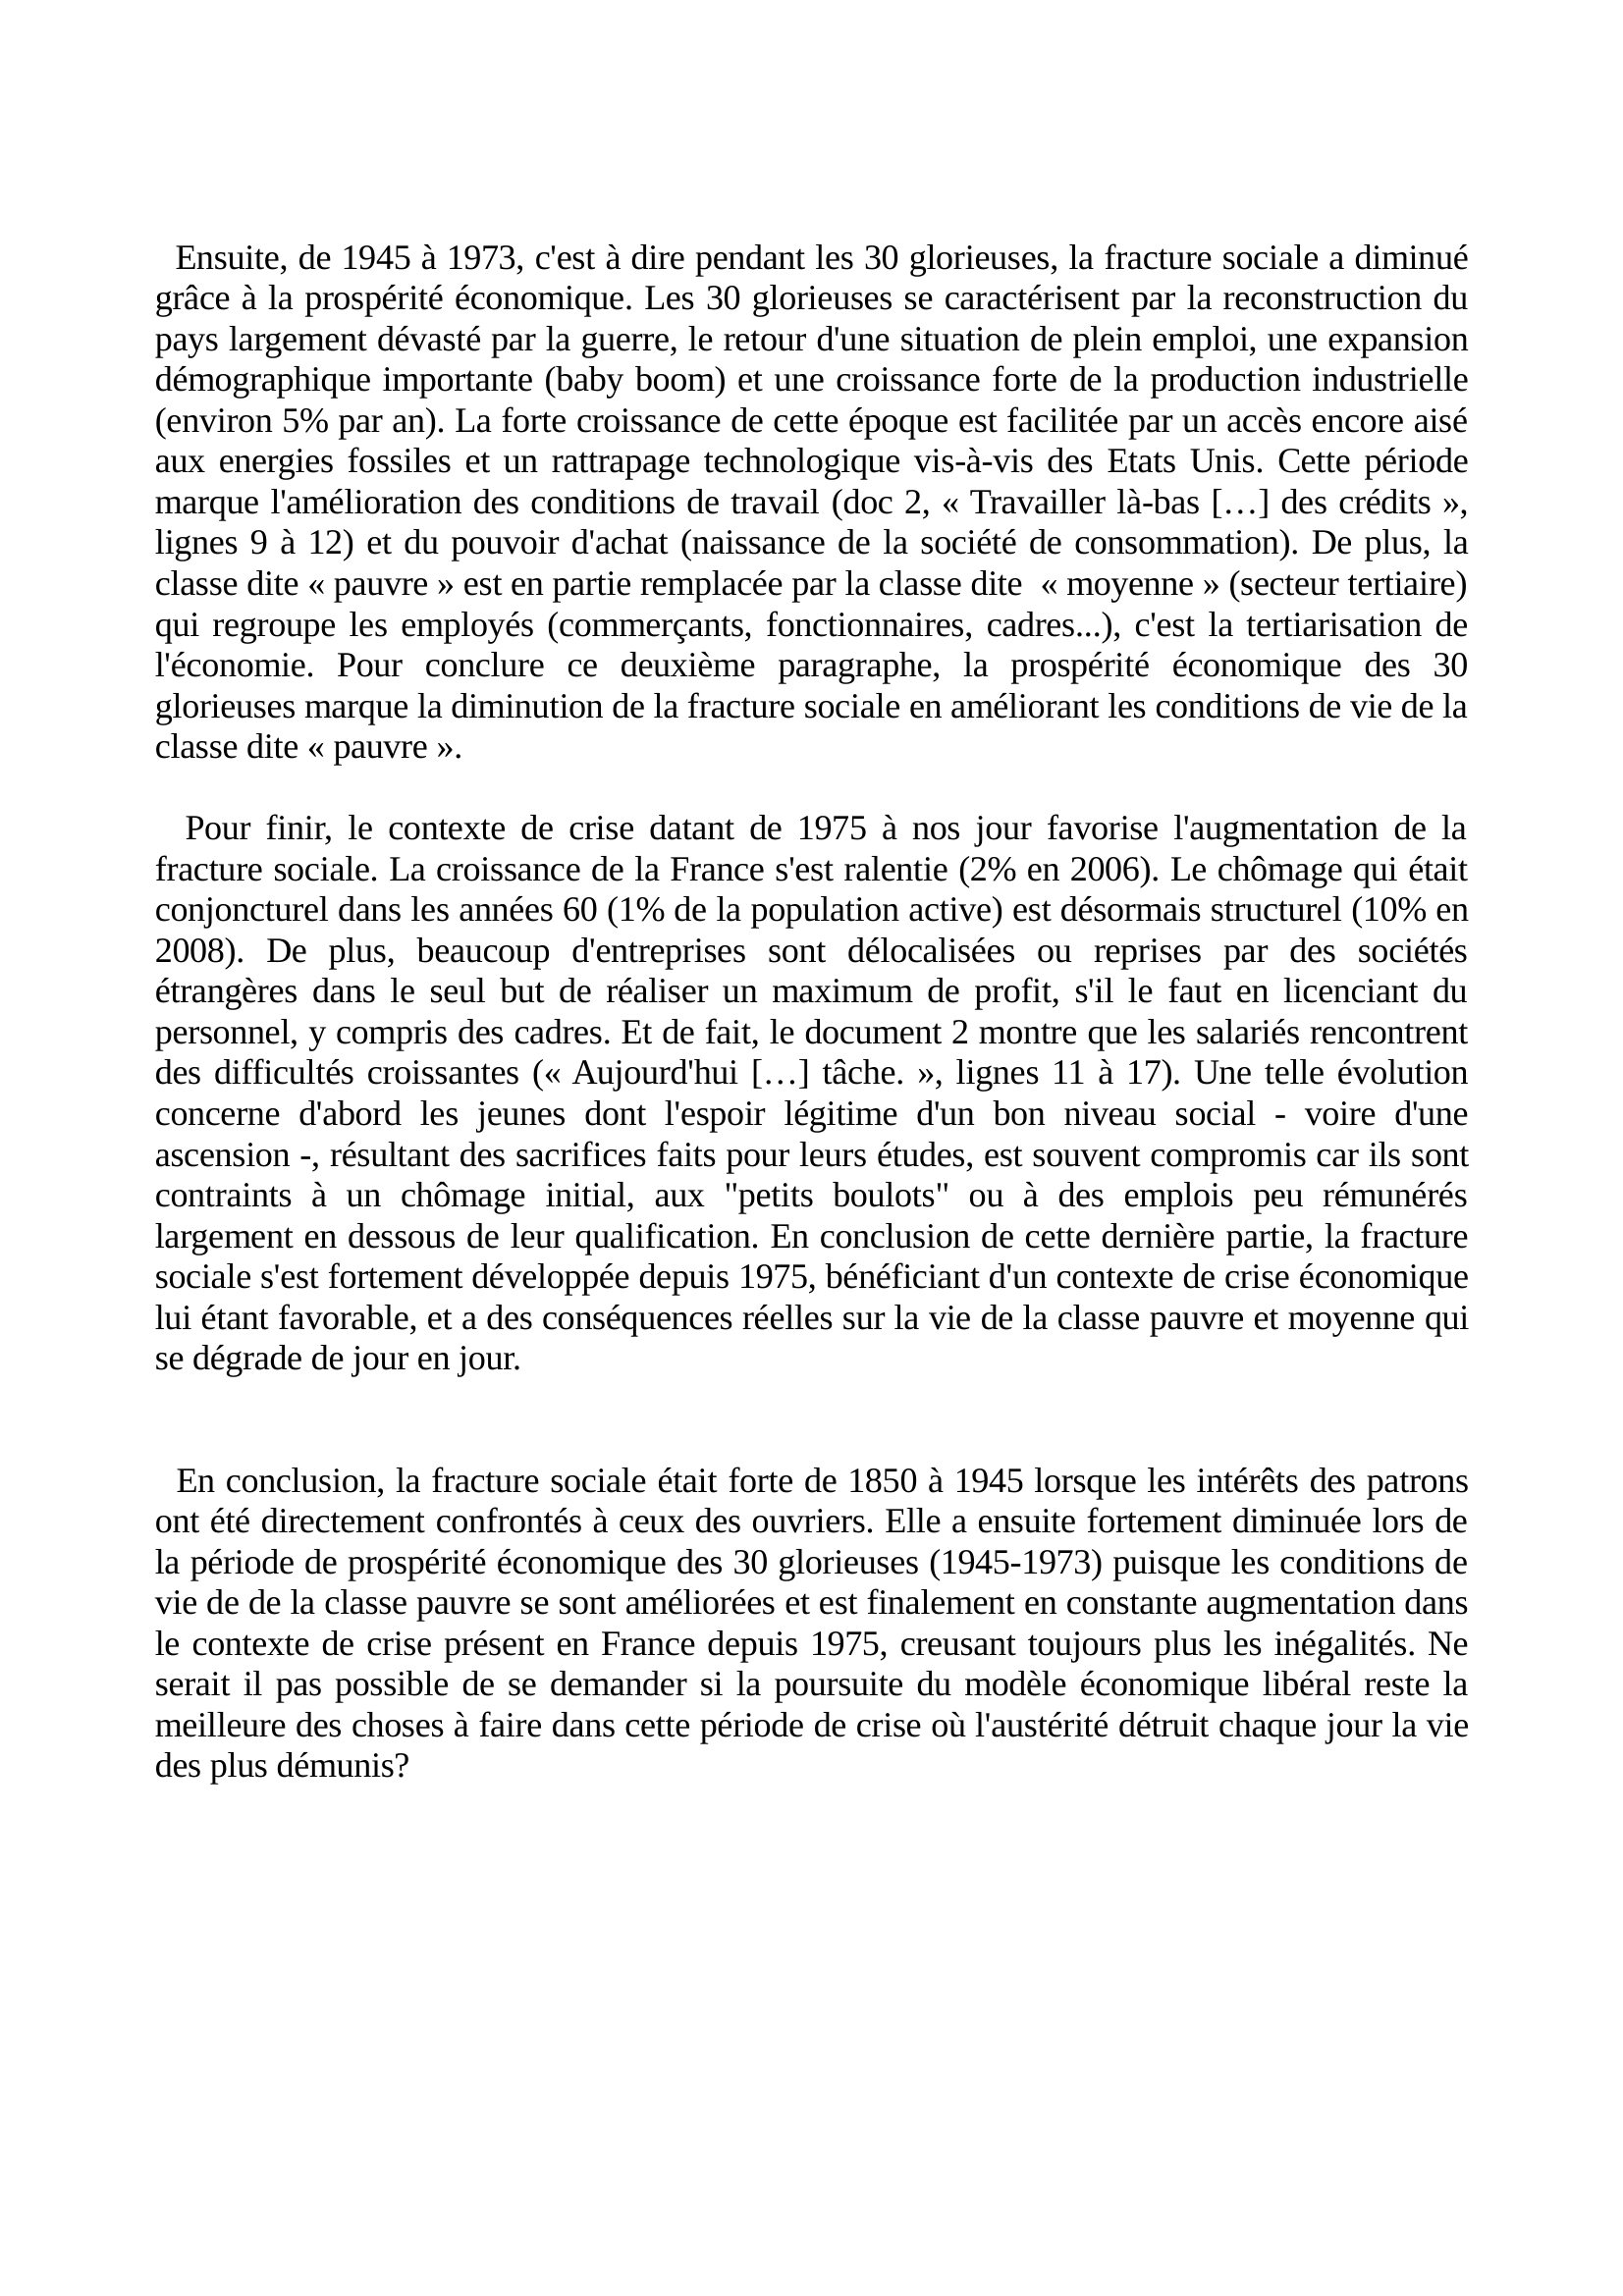 Prévisualisation du document Les évolutions de la fracture sociale en France depuis les années 1850 (histoire)